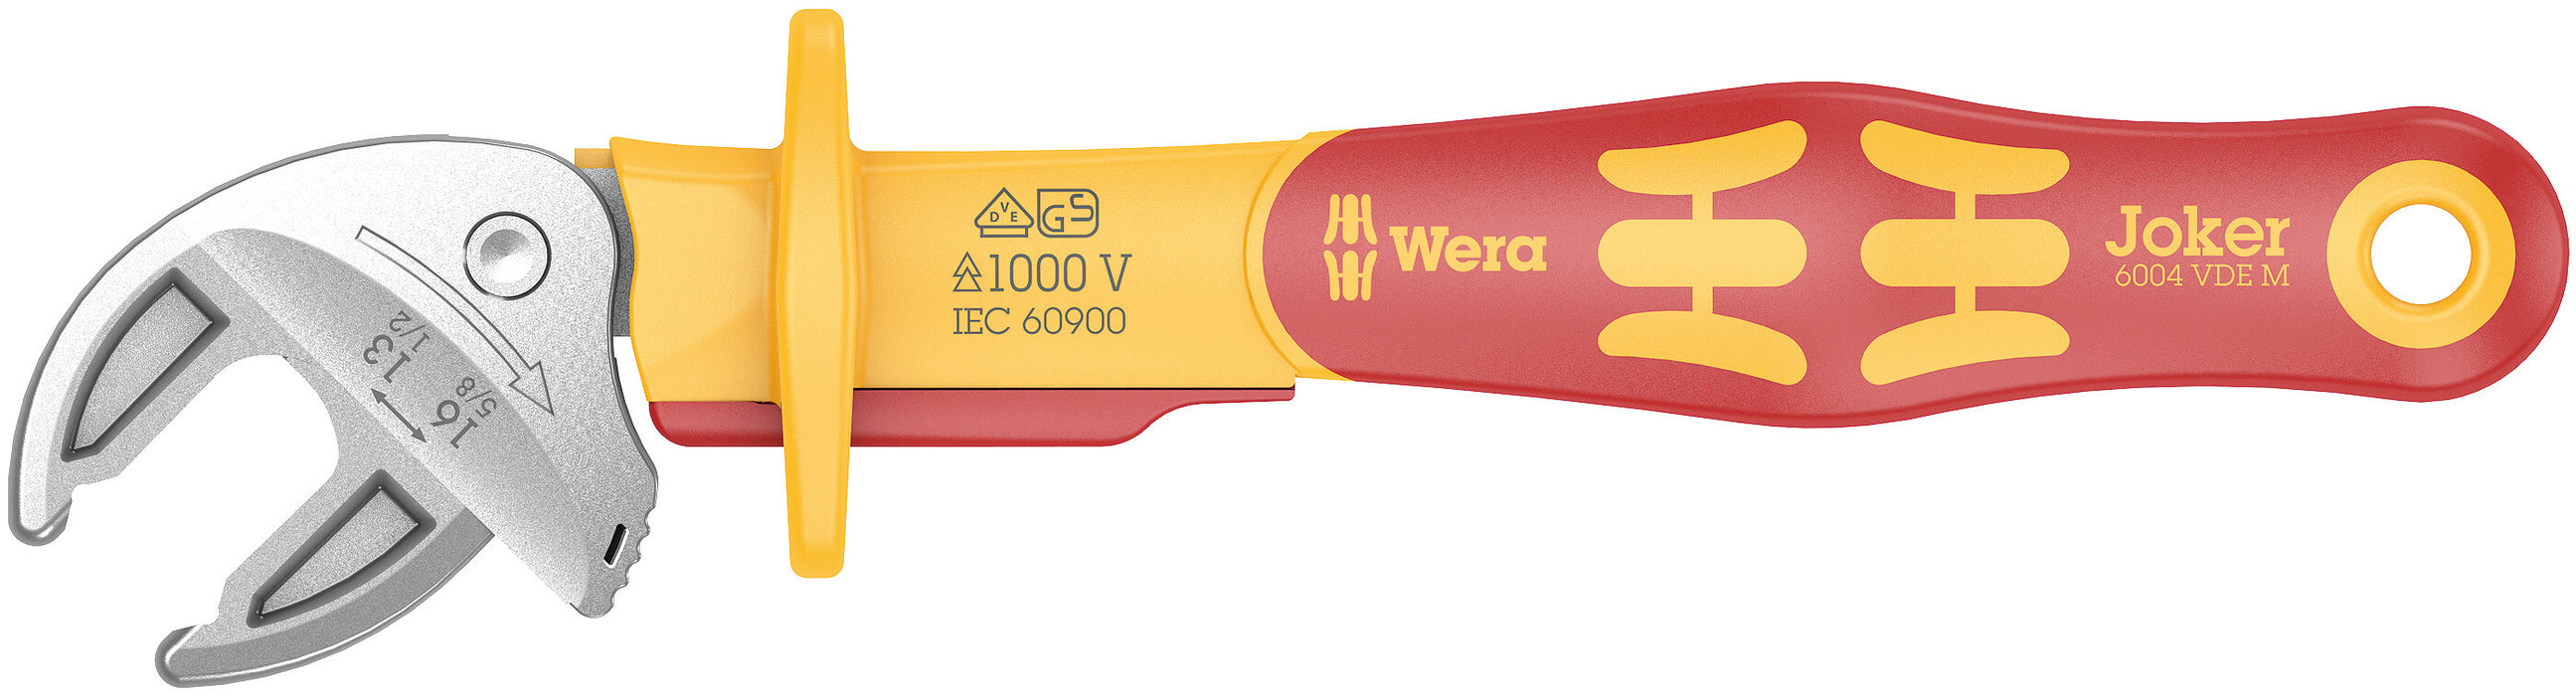 Wera 6004 Joker VDE M VDE-insulated, self-setting spanner, 13-16 x 1/2-5/8" x 190 mm